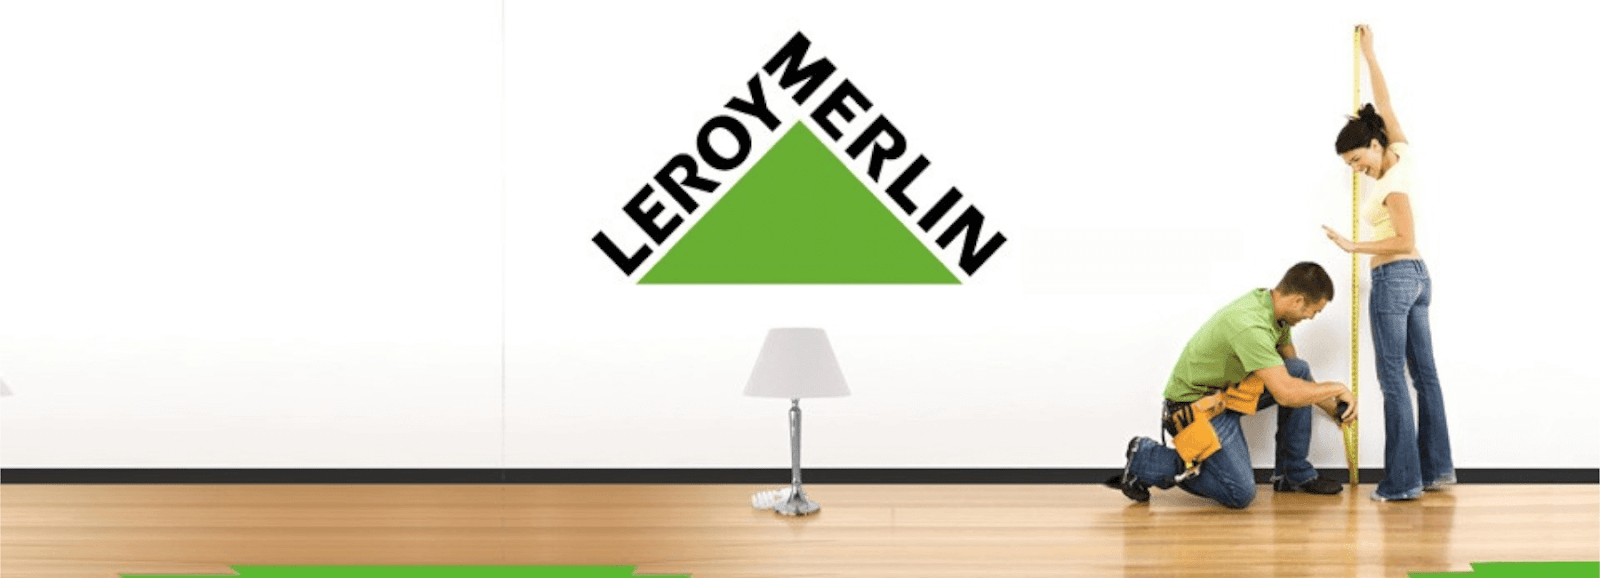 Thợ sửa chữa Leroy Merlin – người bạn đồng hành cùng mọi ngôi nhà